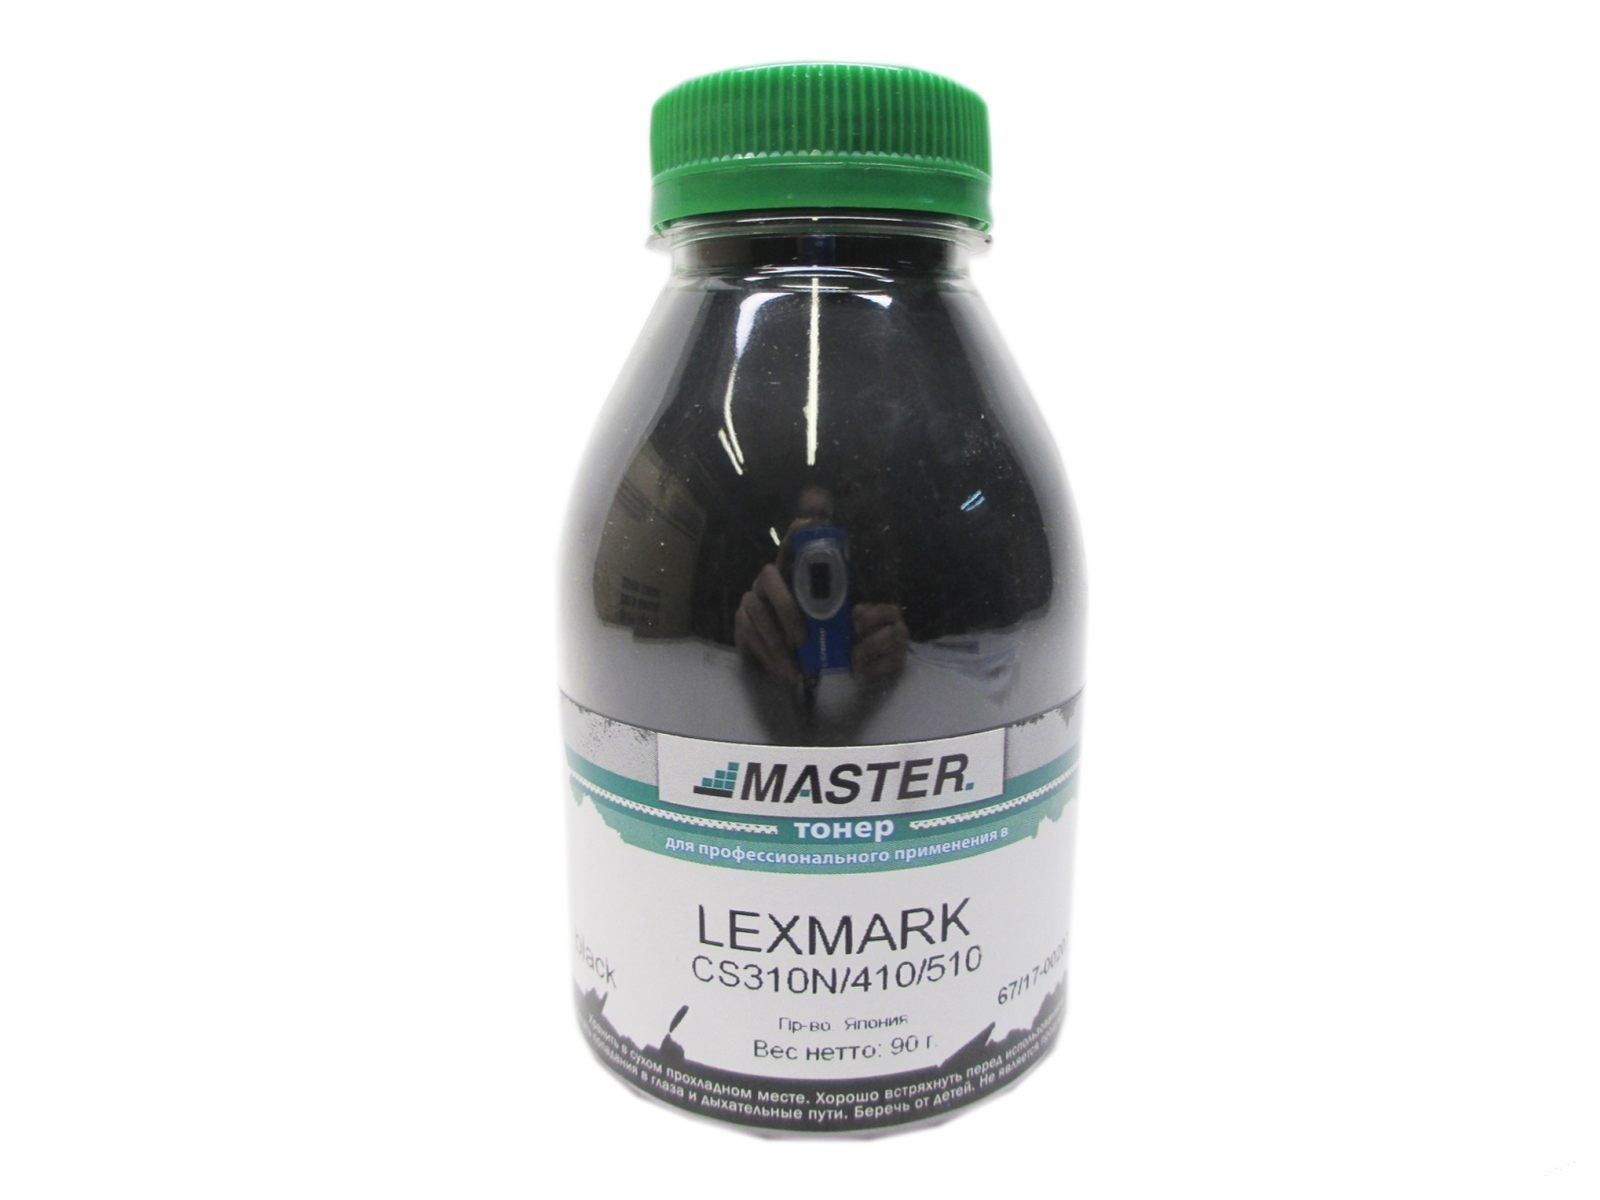 Тонер Lexmark CS310N/410/510, black, 90г/банка, 4К